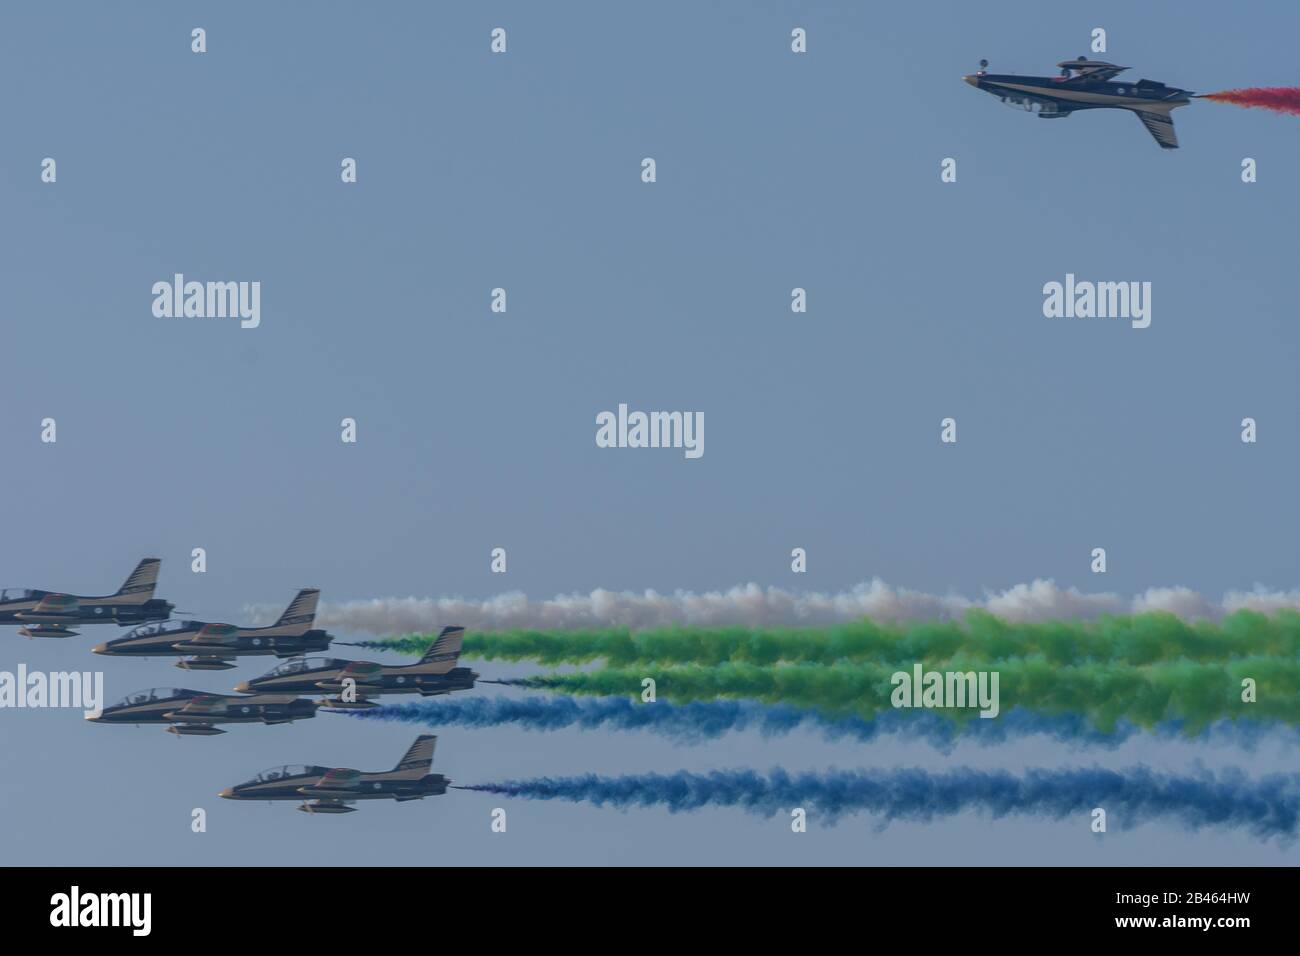 Exposition De la Plus Grande forteresse de l'Union militaire des Émirats arabes Unis à Umm al Quwain avec avions militaires coordonnés montrant les couleurs du drapeau des Émirats arabes Unis sur le ciel bleu vif Banque D'Images